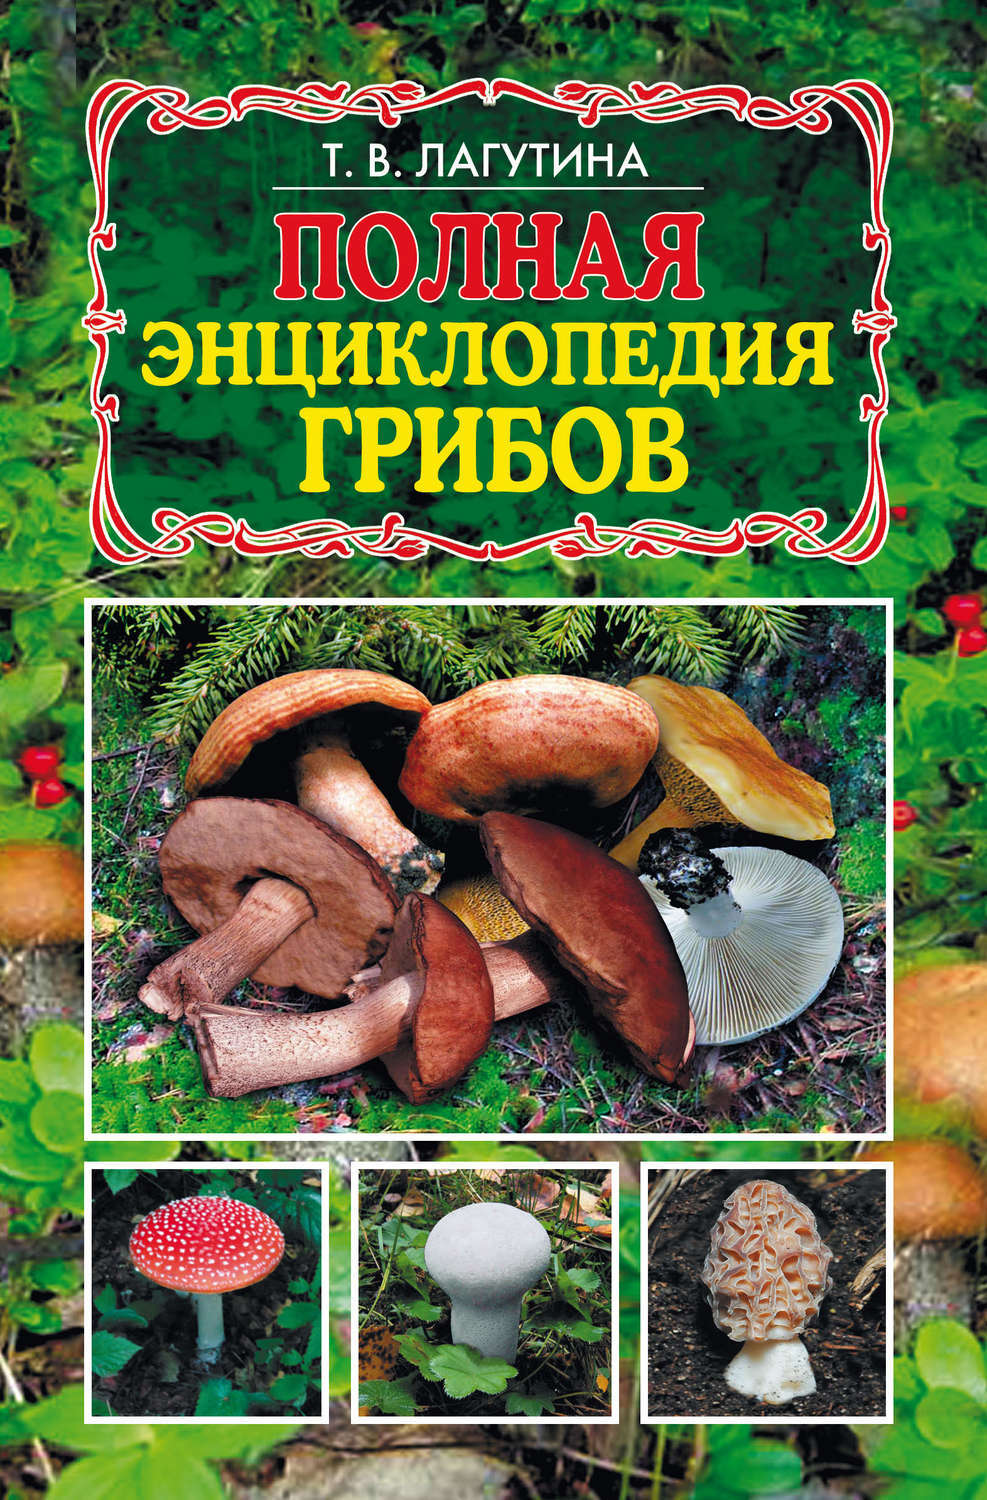 Виды съедобных грибов: названия, фото и описание